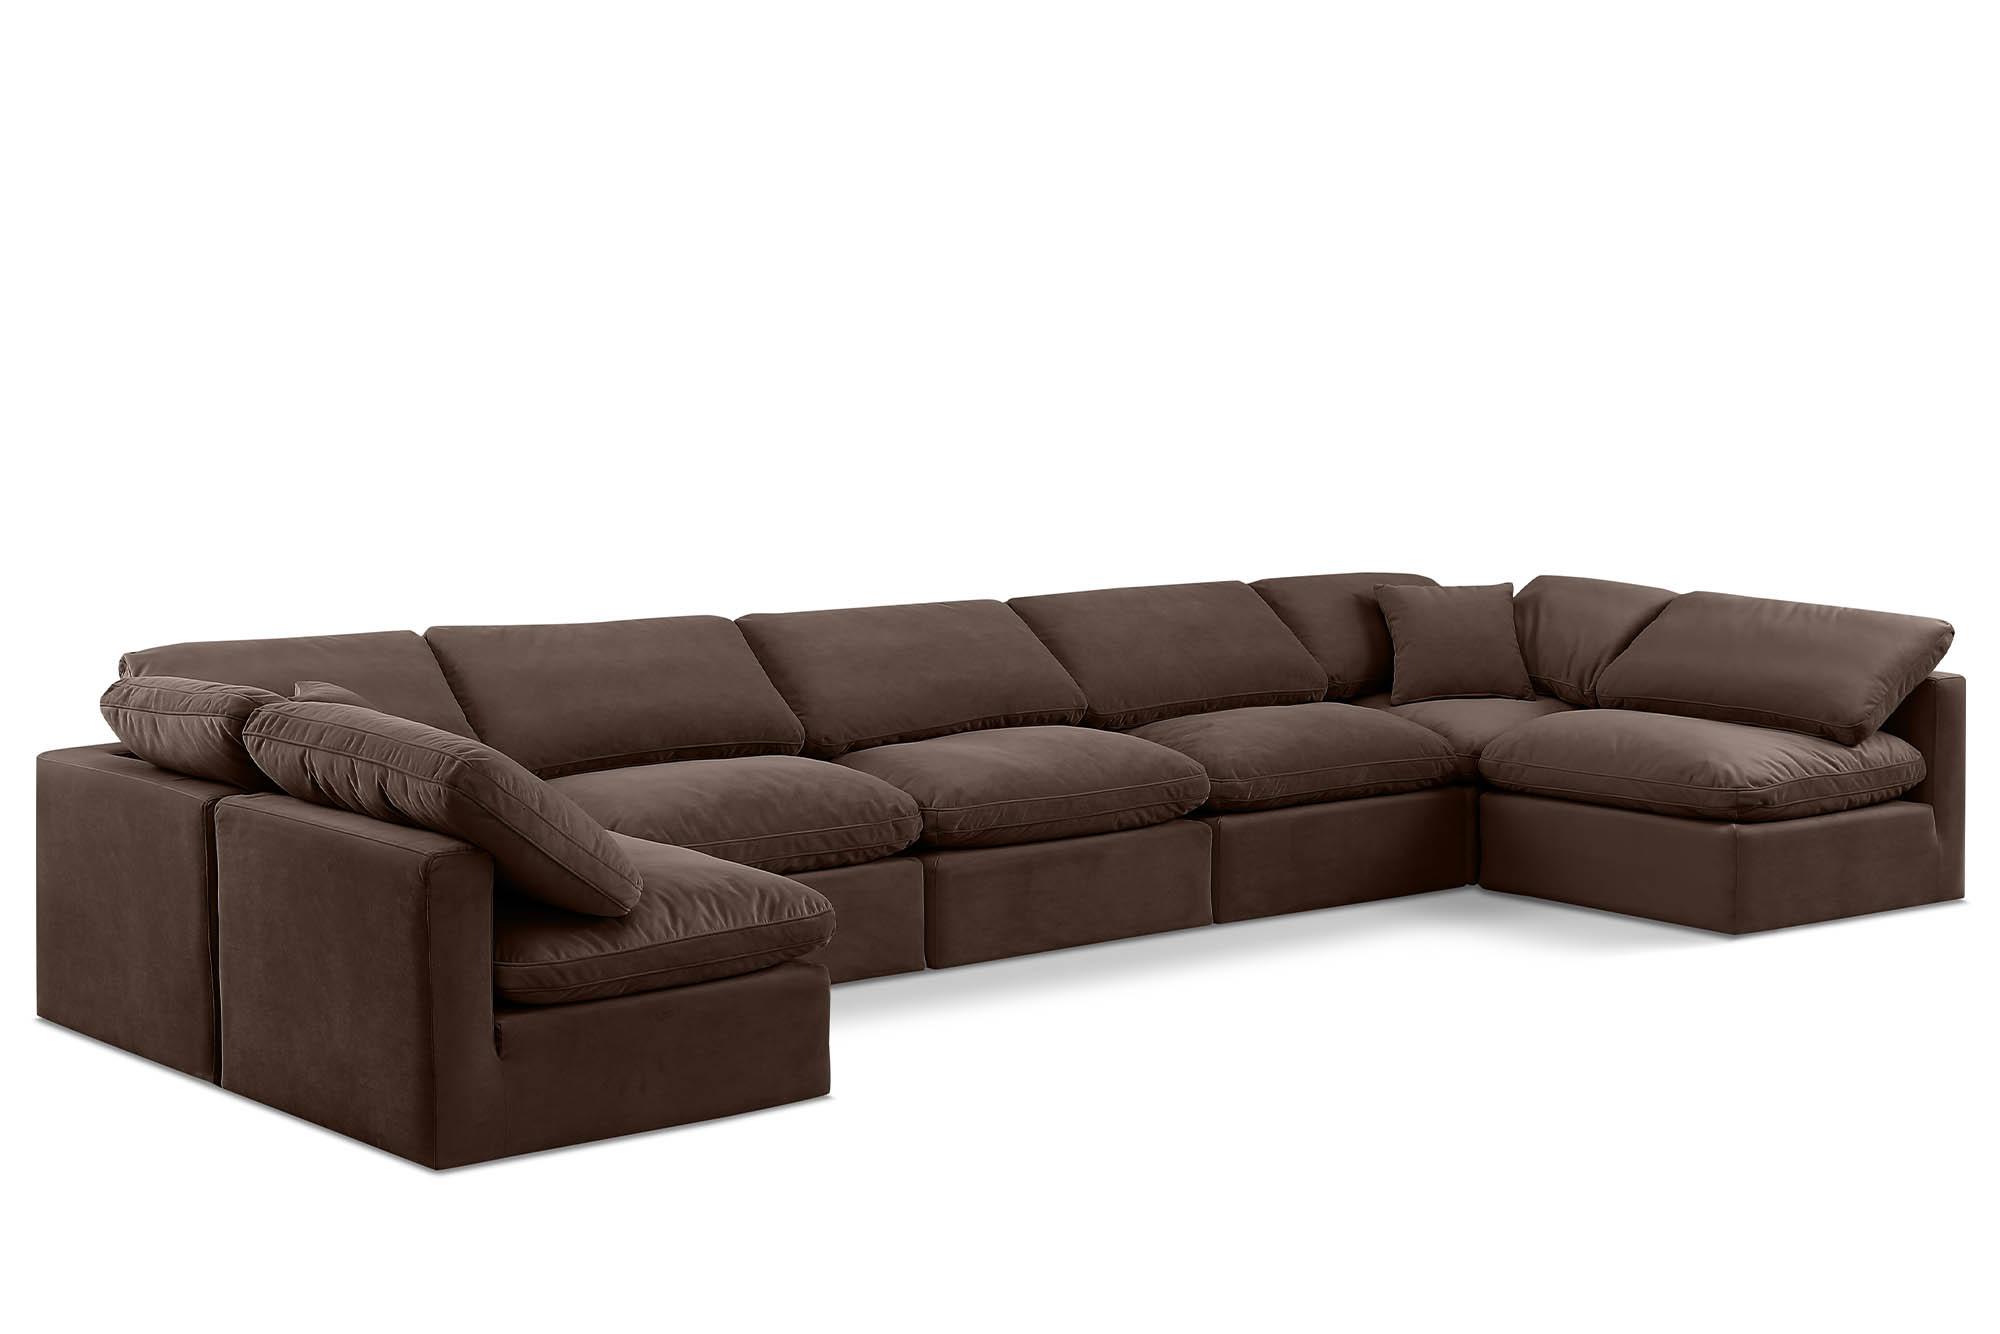 Contemporary, Modern Modular Sectional Sofa INDULGE 147Brown-Sec7B 147Brown-Sec7B in Brown Velvet